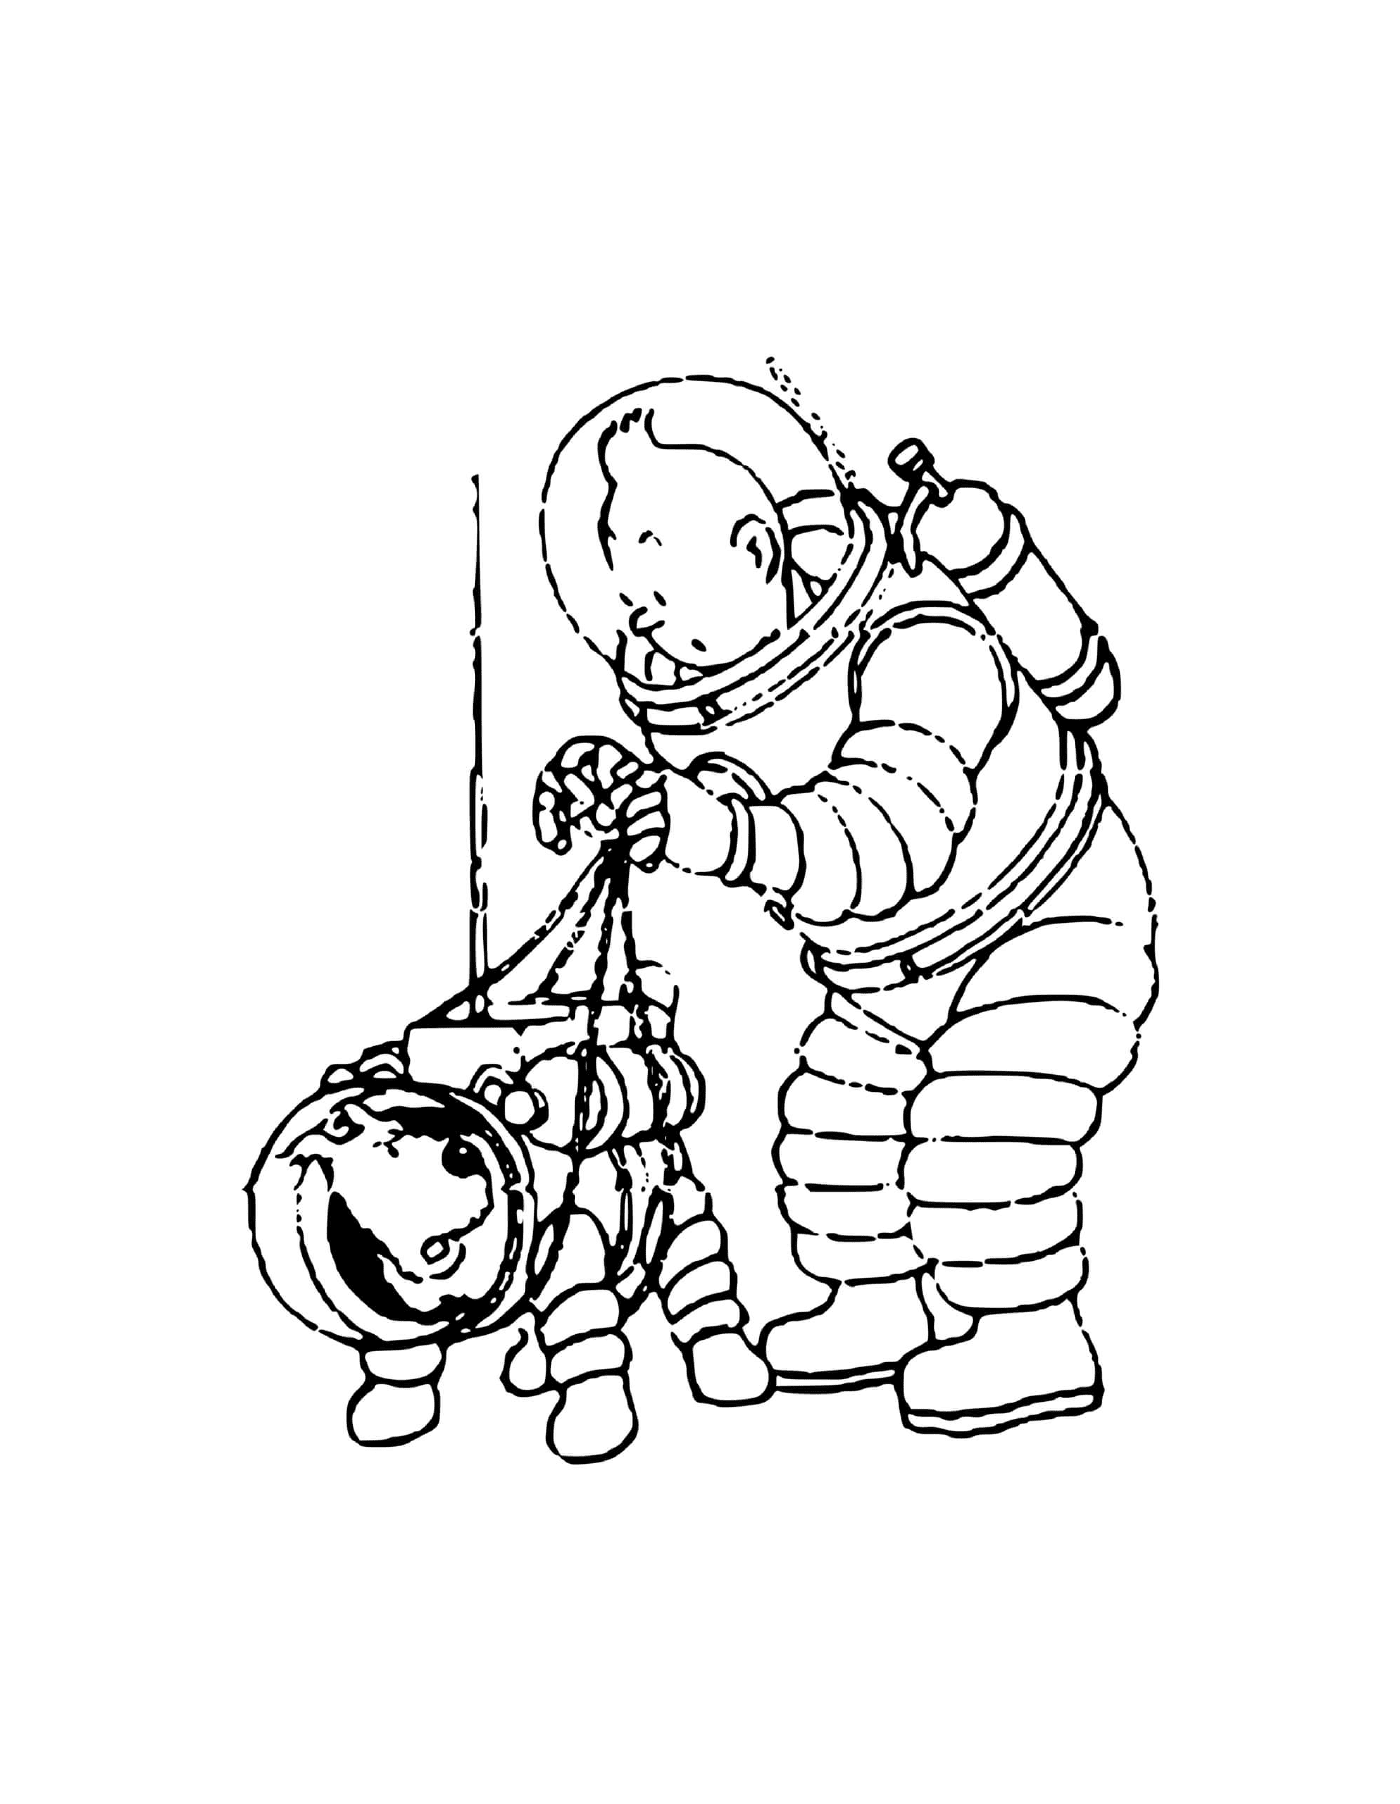  Tintin and Milou astronauts 